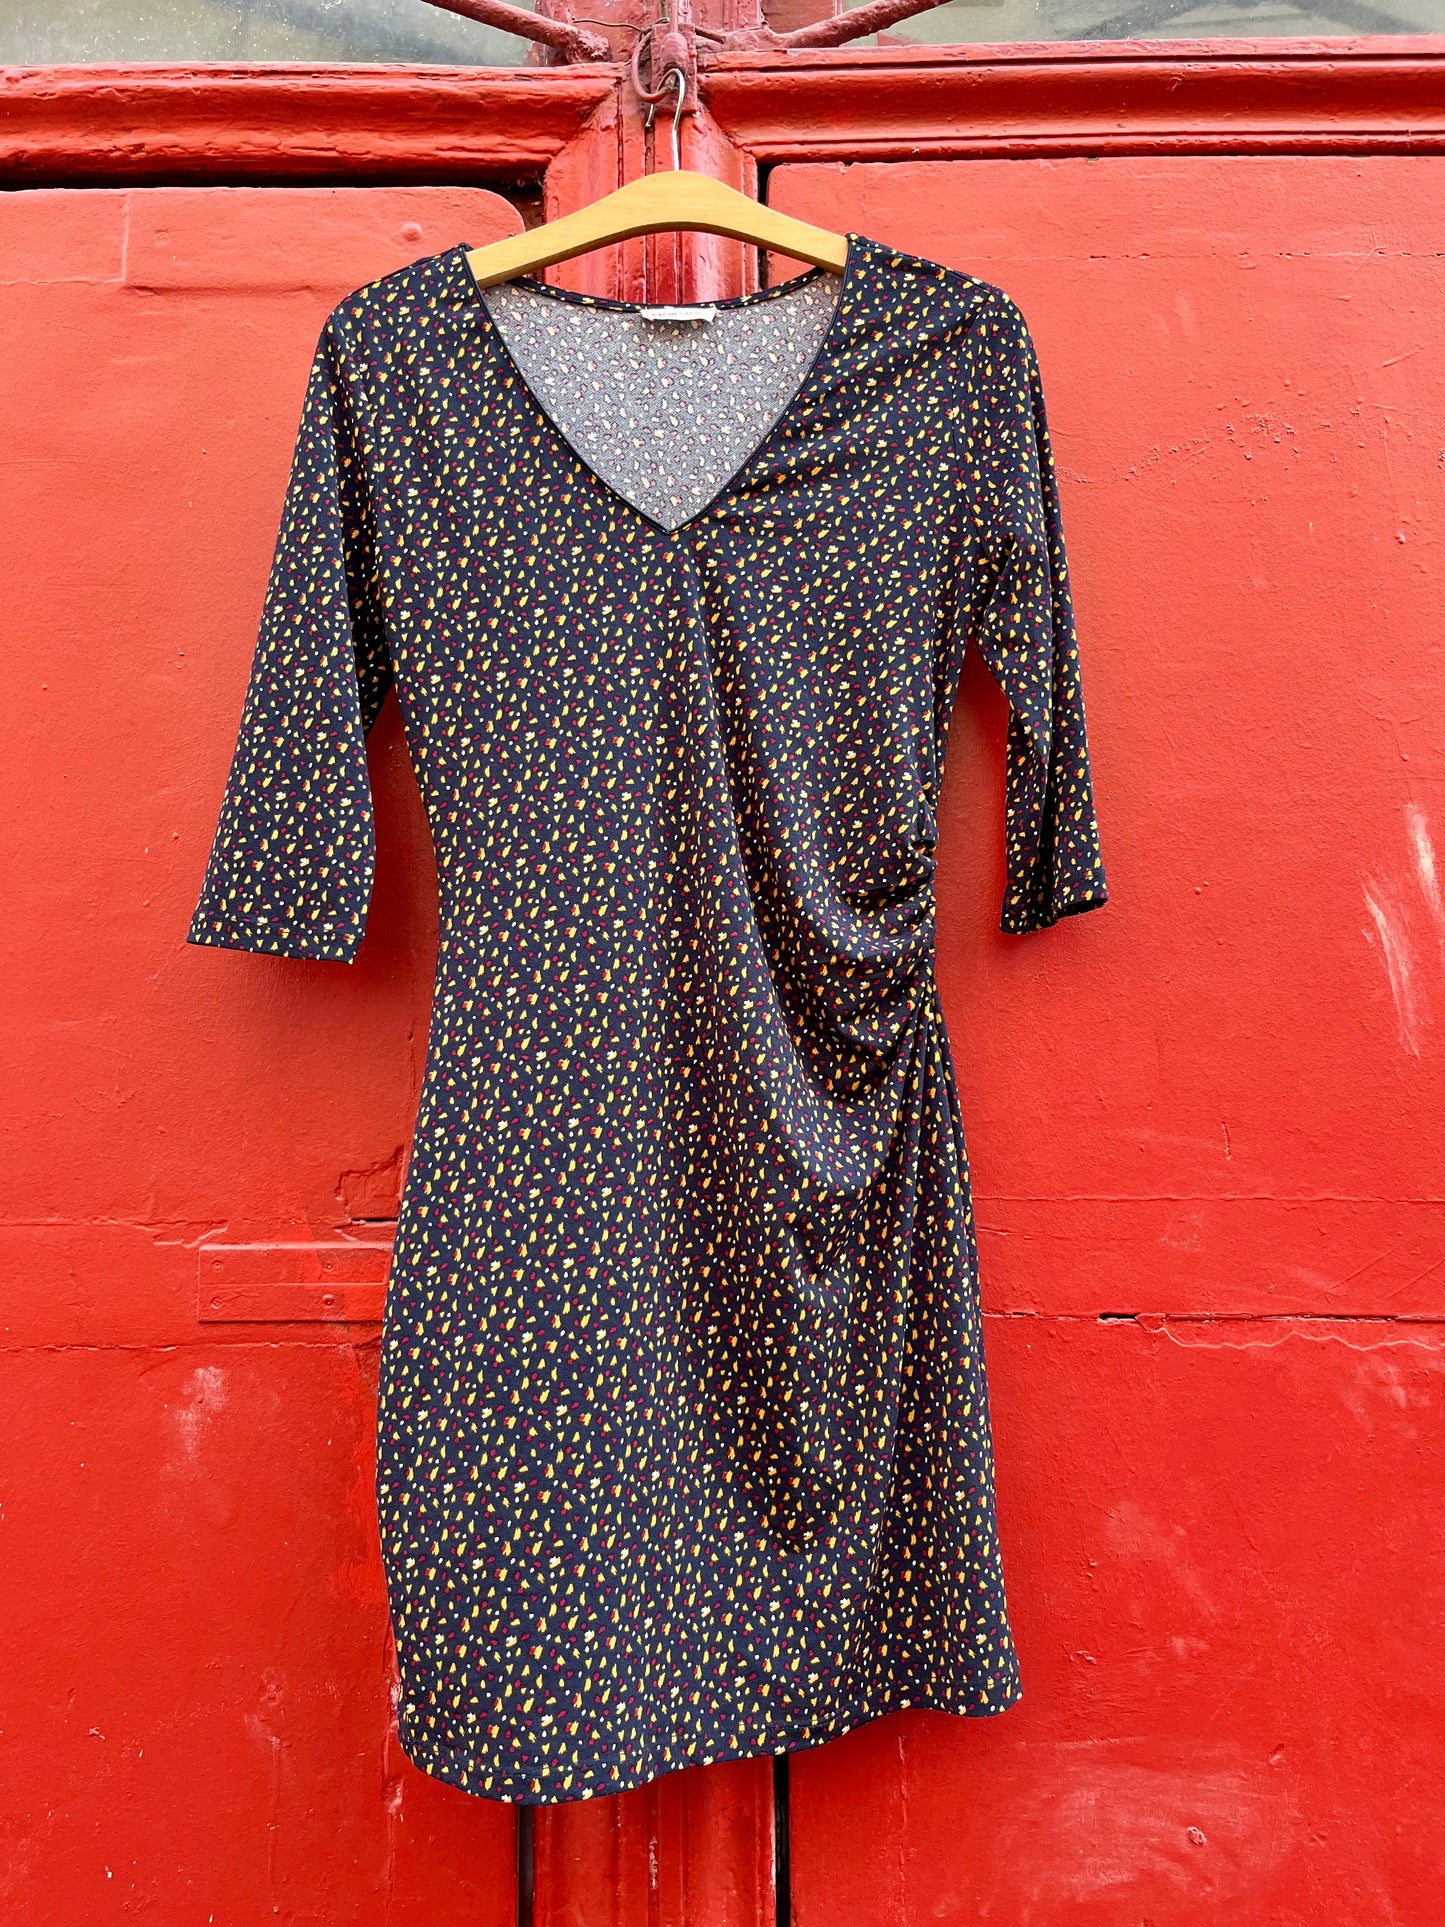 La robe à drapés, CACHE-CACHE, taille 36